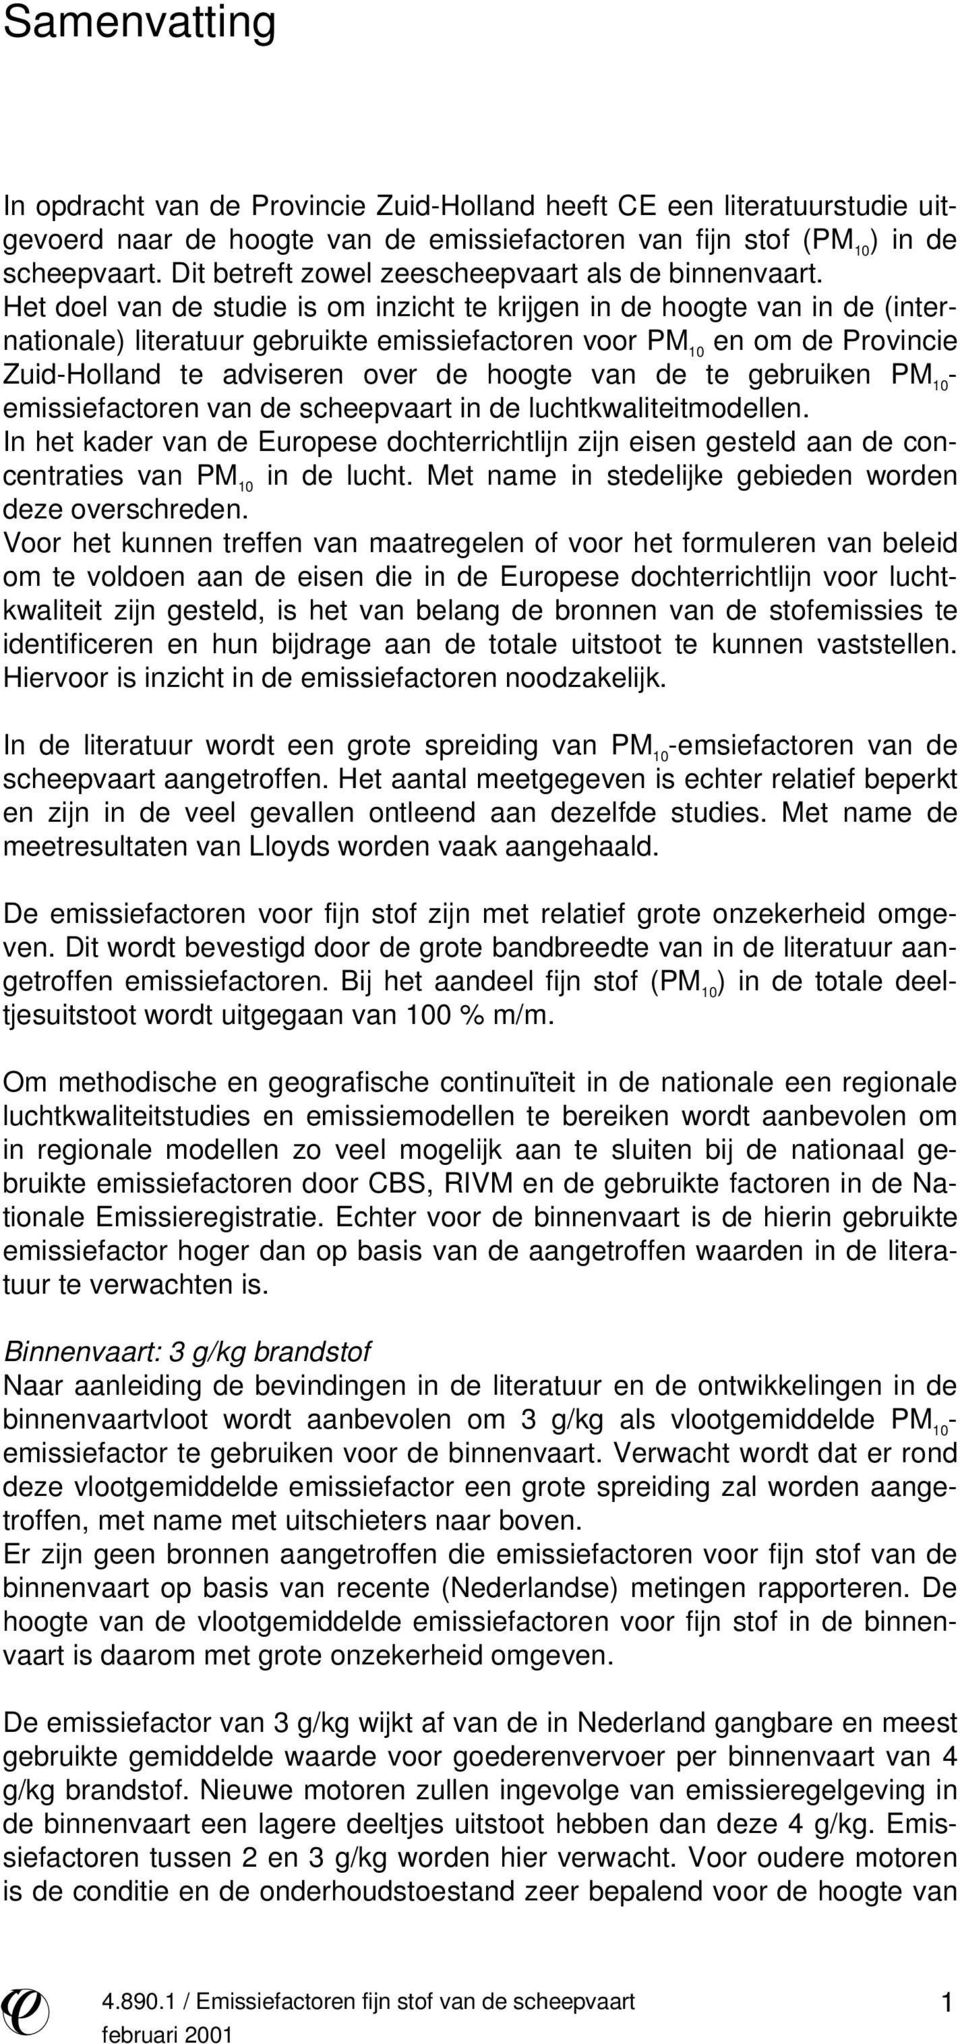 Het doel van de studie is om inzicht te krijgen in de hoogte van in de (internationale) literatuur gebruikte emissiefactoren voor PM 10 en om de Provincie Zuid-Holland te adviseren over de hoogte van